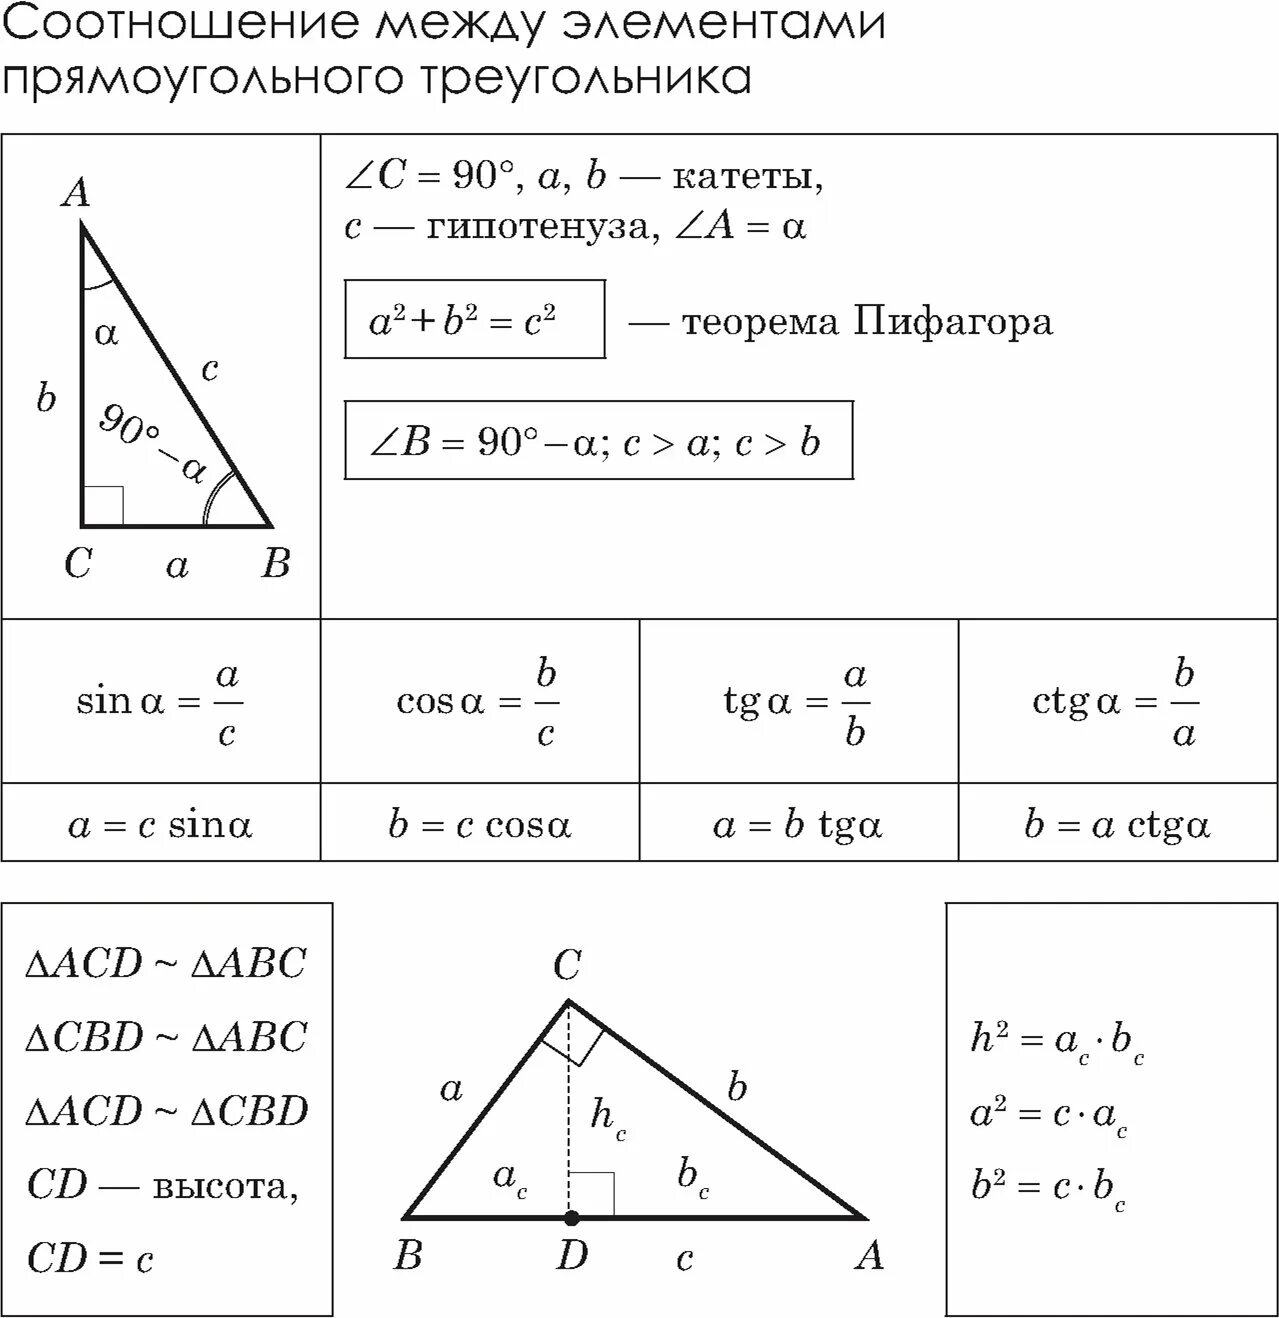 Некоторые свойства прямоугольных таблица 10. Площадь треугольника таблица 10. Соотношение между элементами прямоугольного треугольника. Соотношения в прямоугольном треугольнике. Соотношения в прямоугольном треу.